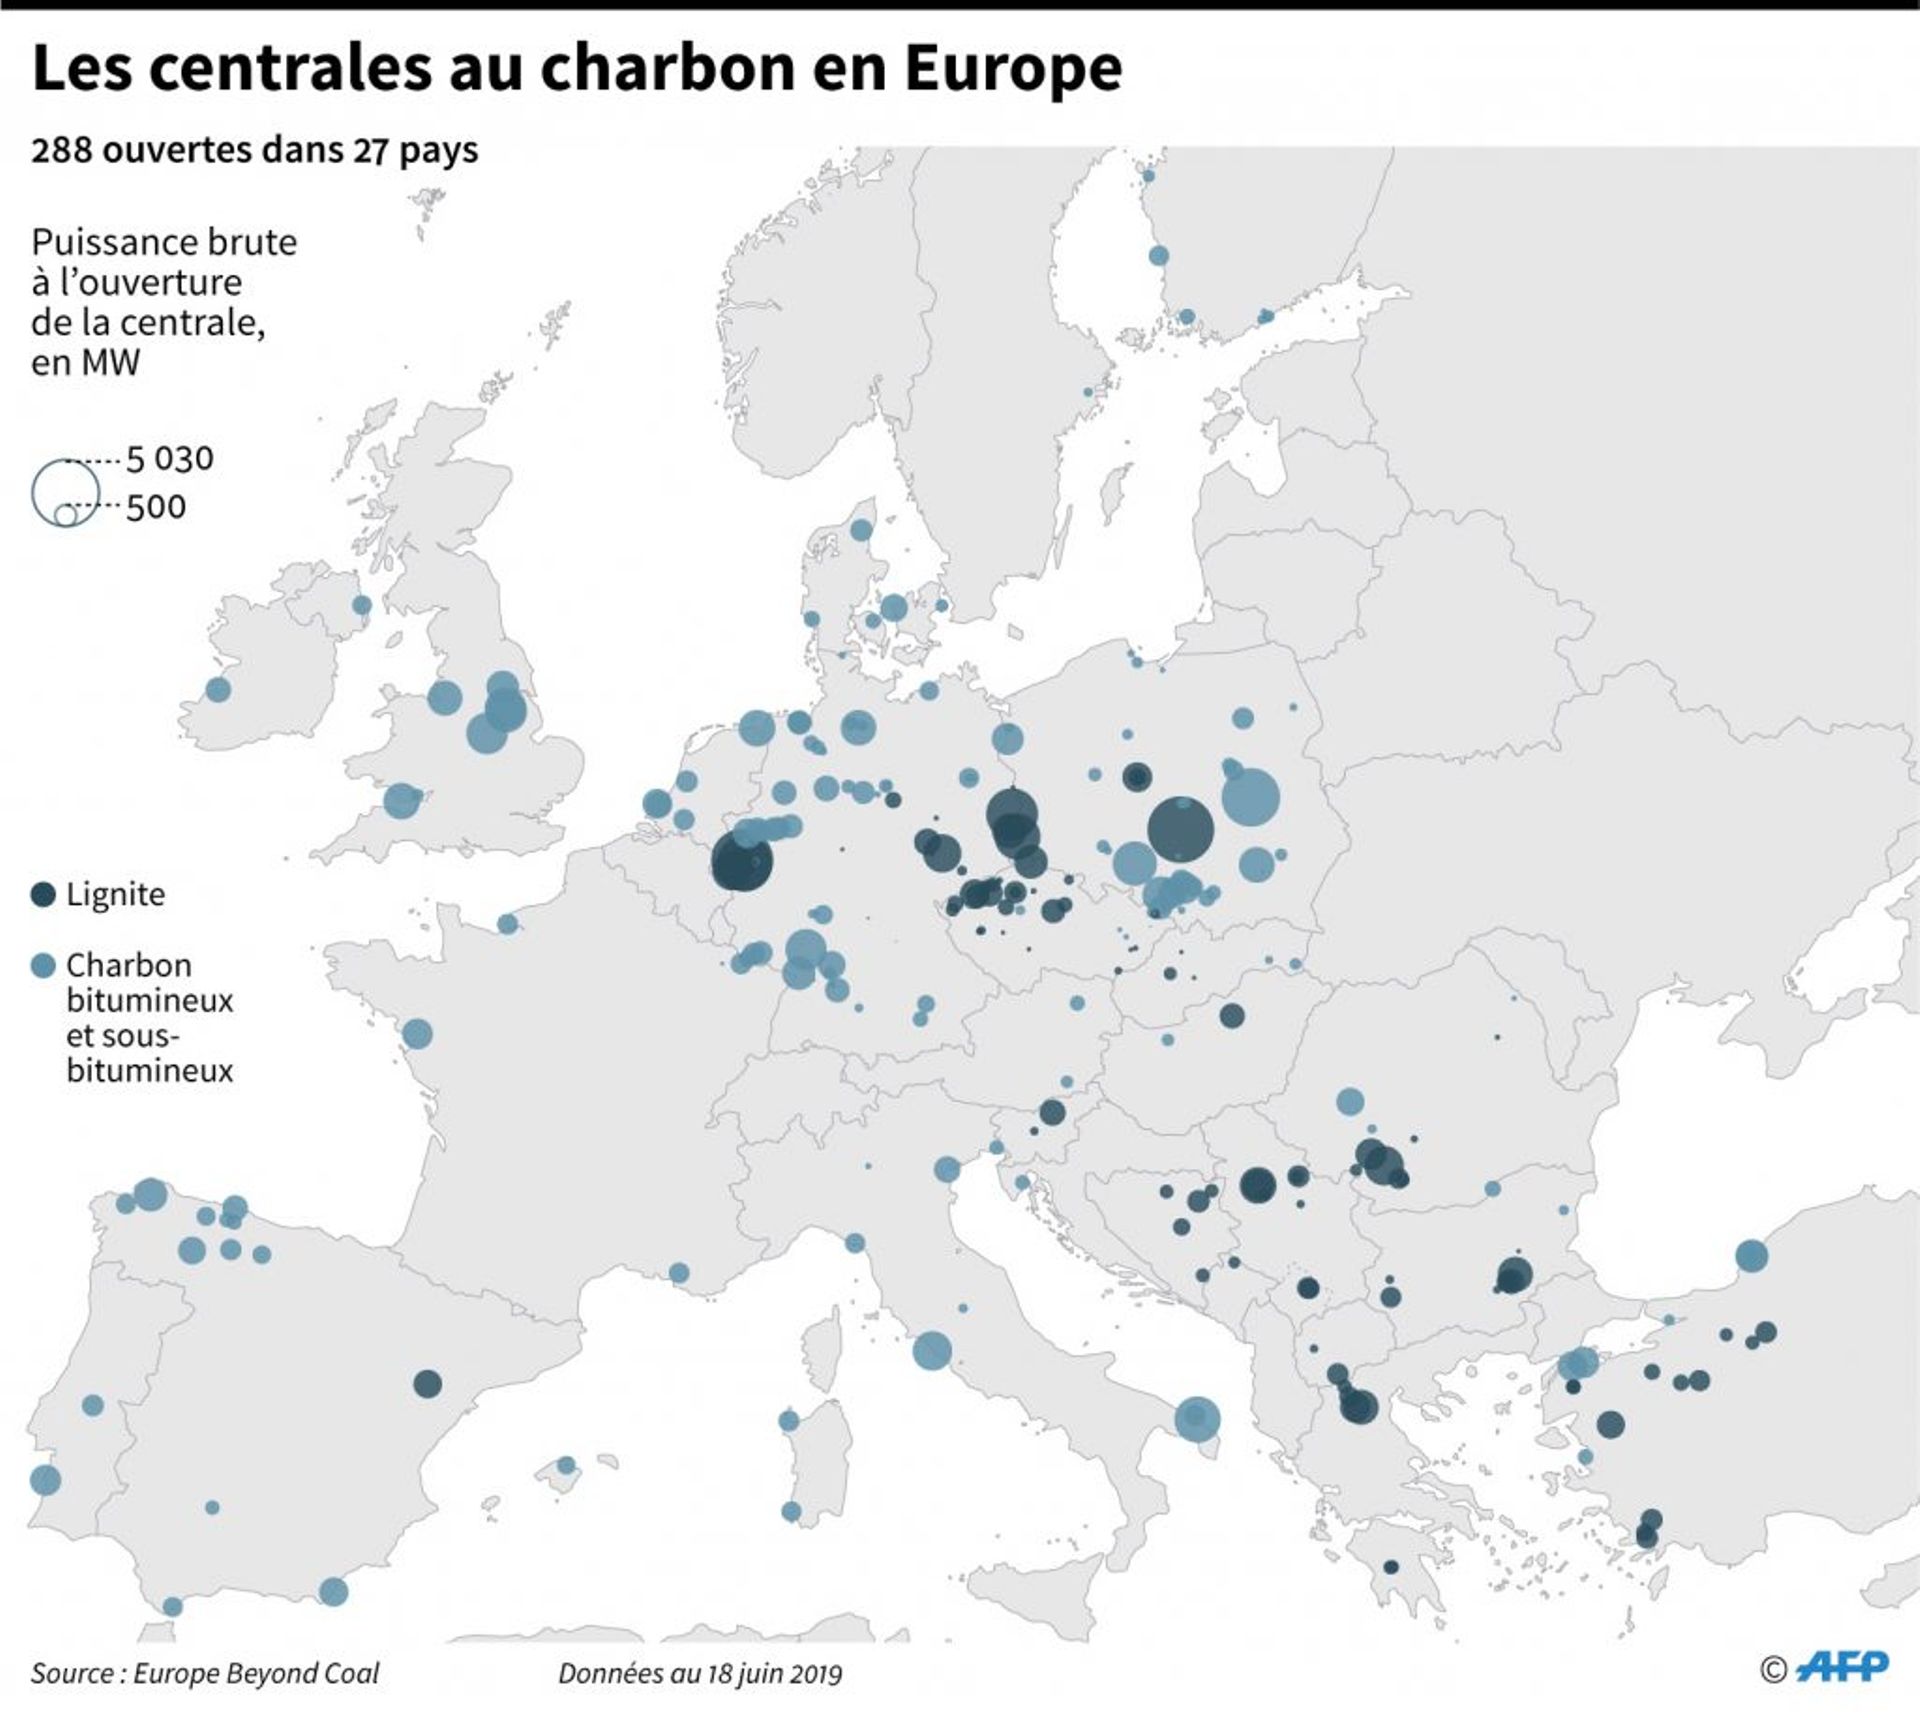 Les centrales au charbon en Europe (source : Europe Beyond Coal)